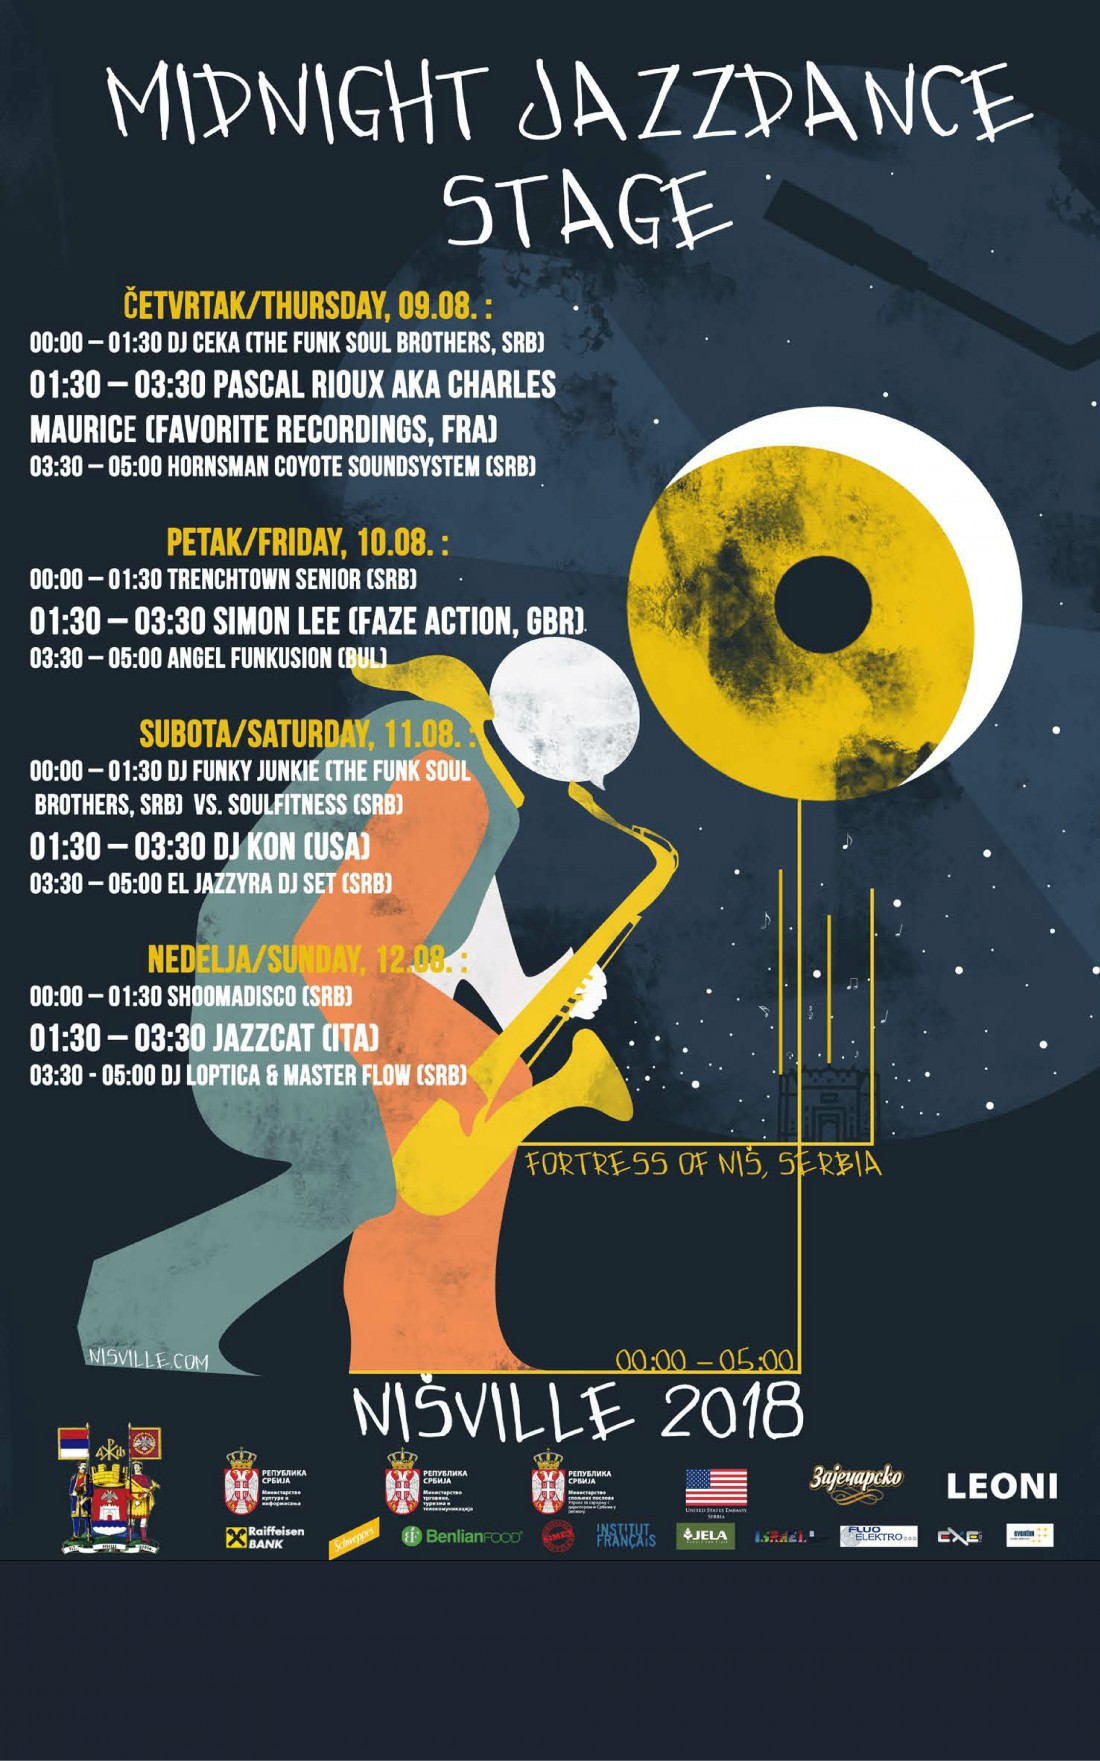 Midnight Jazz Dance Lineup - Nisville 2018